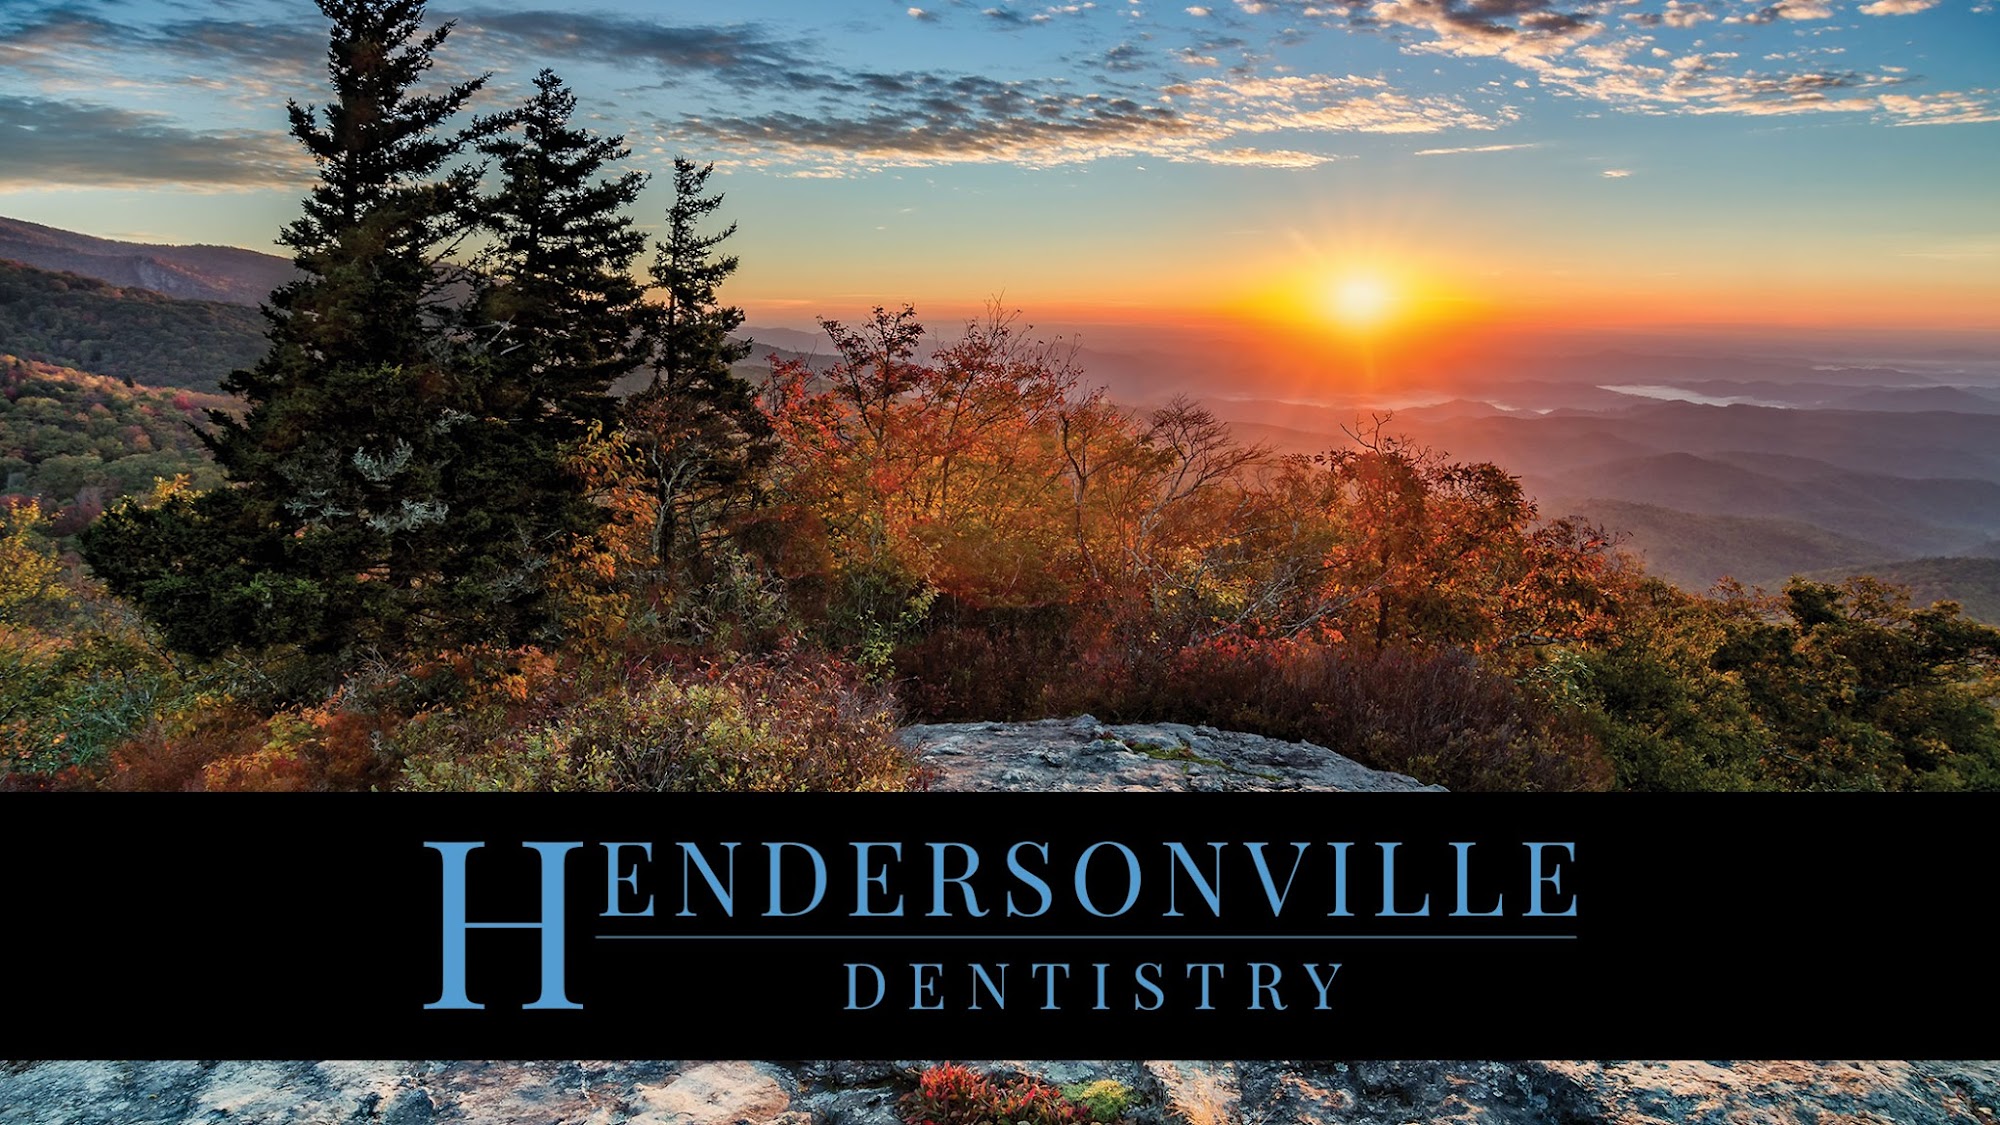 Hendersonville Dentistry